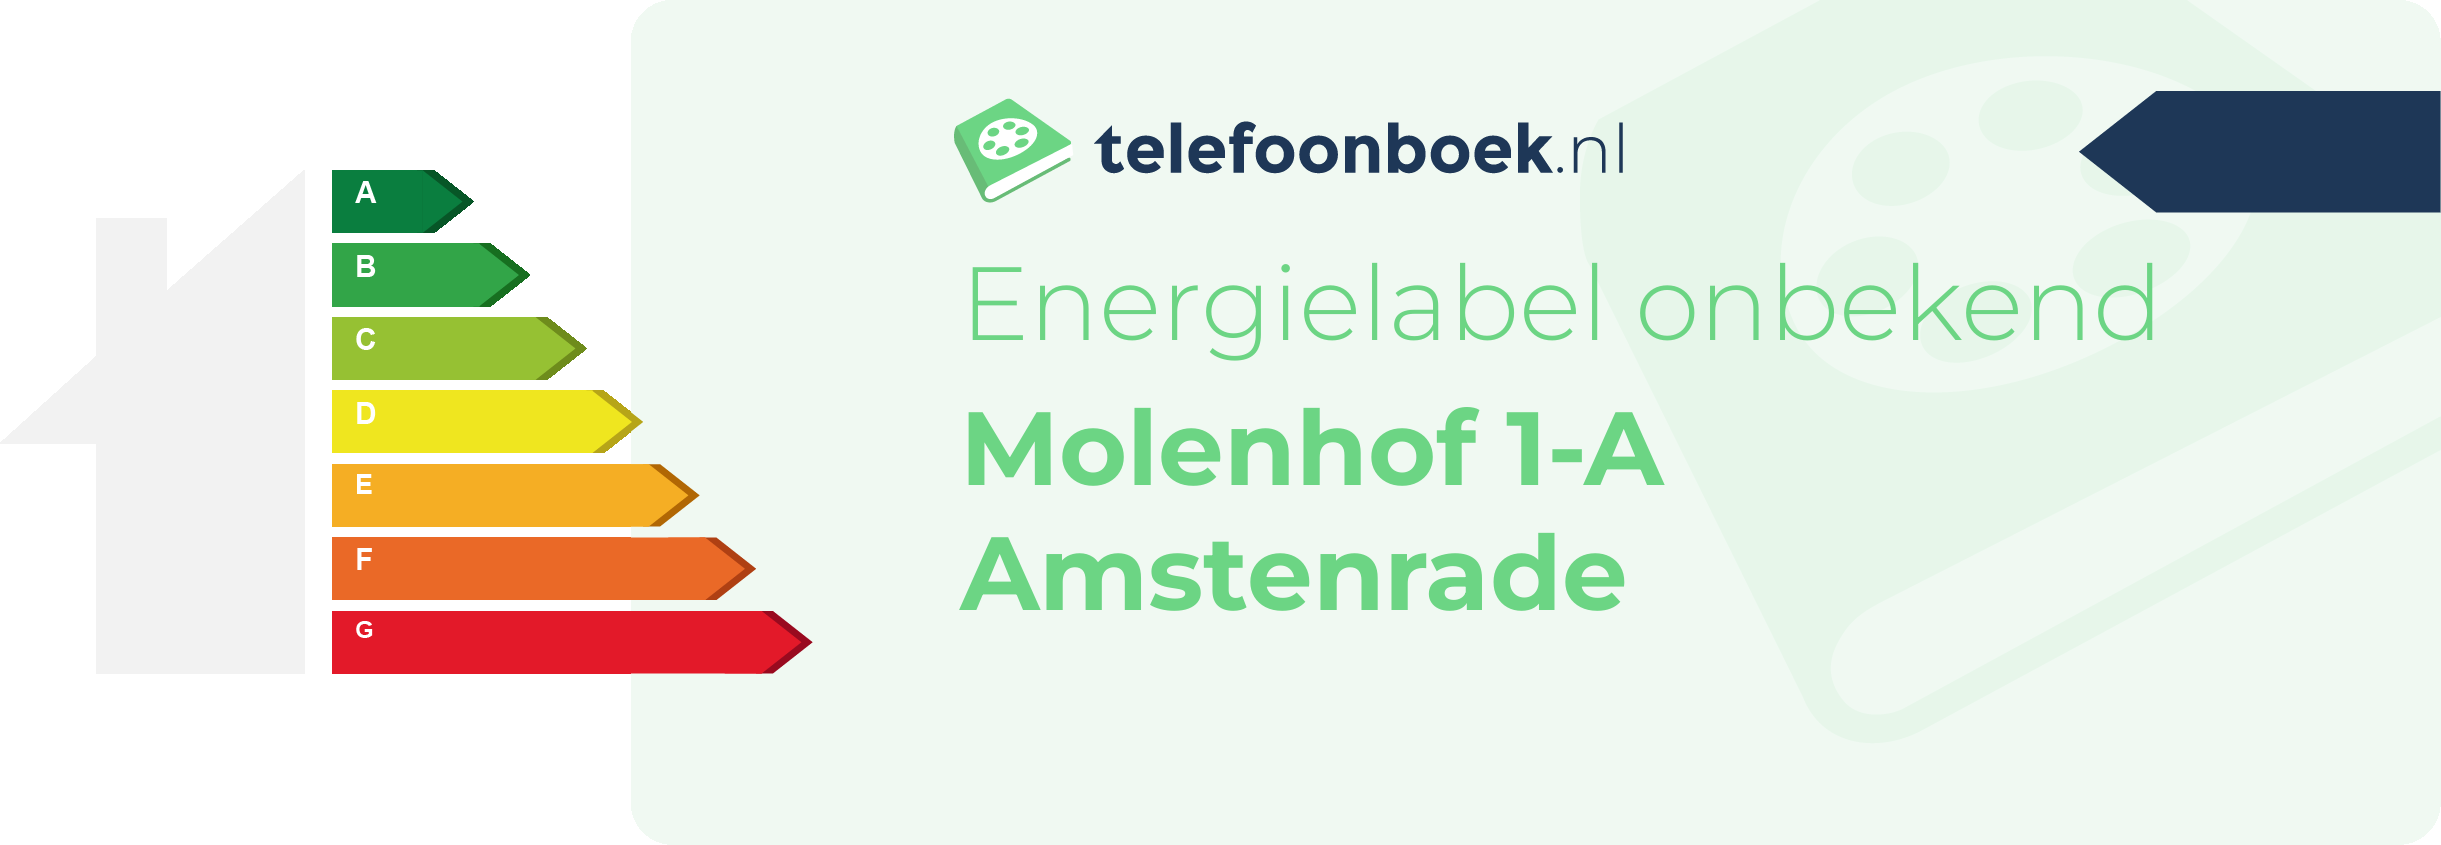 Energielabel Molenhof 1-A Amstenrade